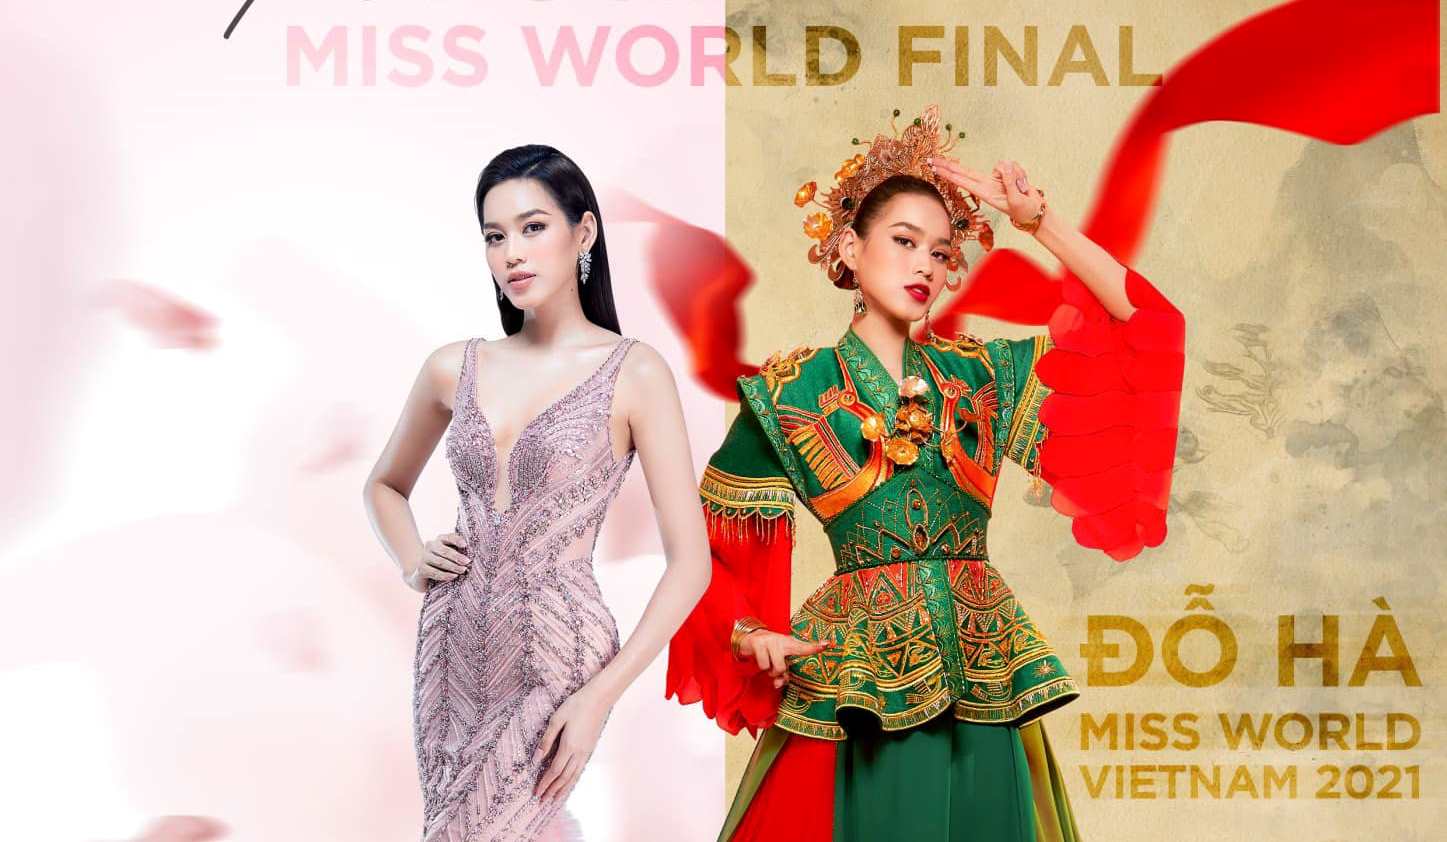 Chung kết Miss World dời lịch tới tháng 3.2022